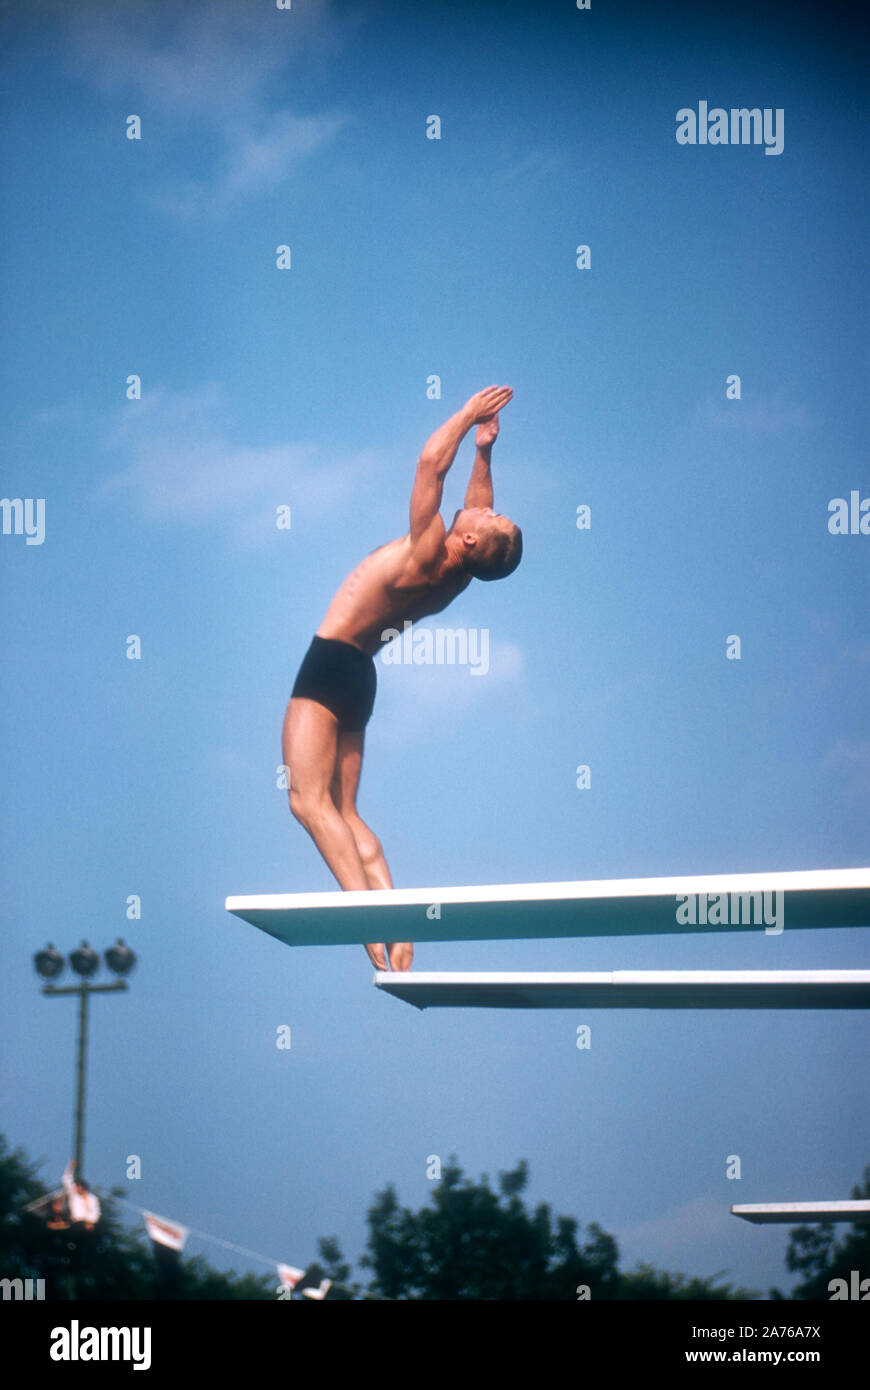 DETROIT, MI - AOÛT, 1956 : American diver Jerry Harrison va dans sa motion au cours de la plongée 1956 Essais olympiques de natation vers Août, 1956 Piscine à Brennan à Detroit, Michigan. (Photo de Hy Peskin) (Définition du nombre : X3992) Banque D'Images